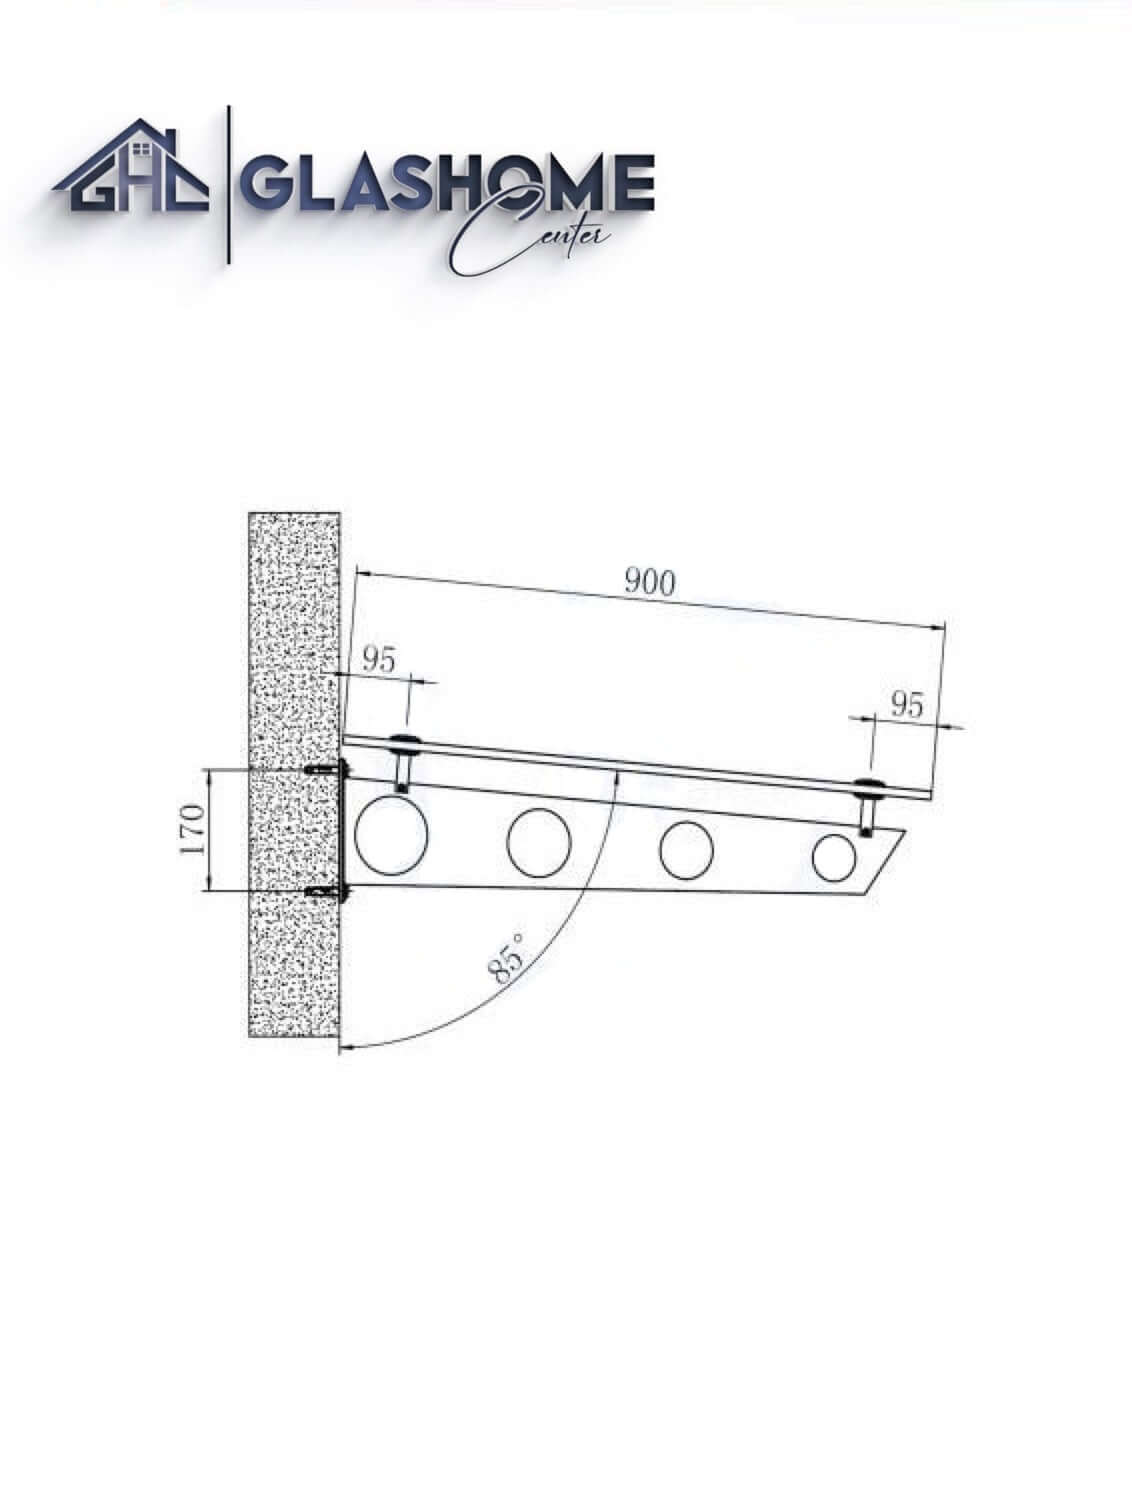 GlasHomeCenter - baldacchino in vetro - vetro trasparente - 200x90 cm - vetro di sicurezza stratificato 13,1 mm - incl.3 staffe in acciaio inossidabile nero variante "Stoccolma"